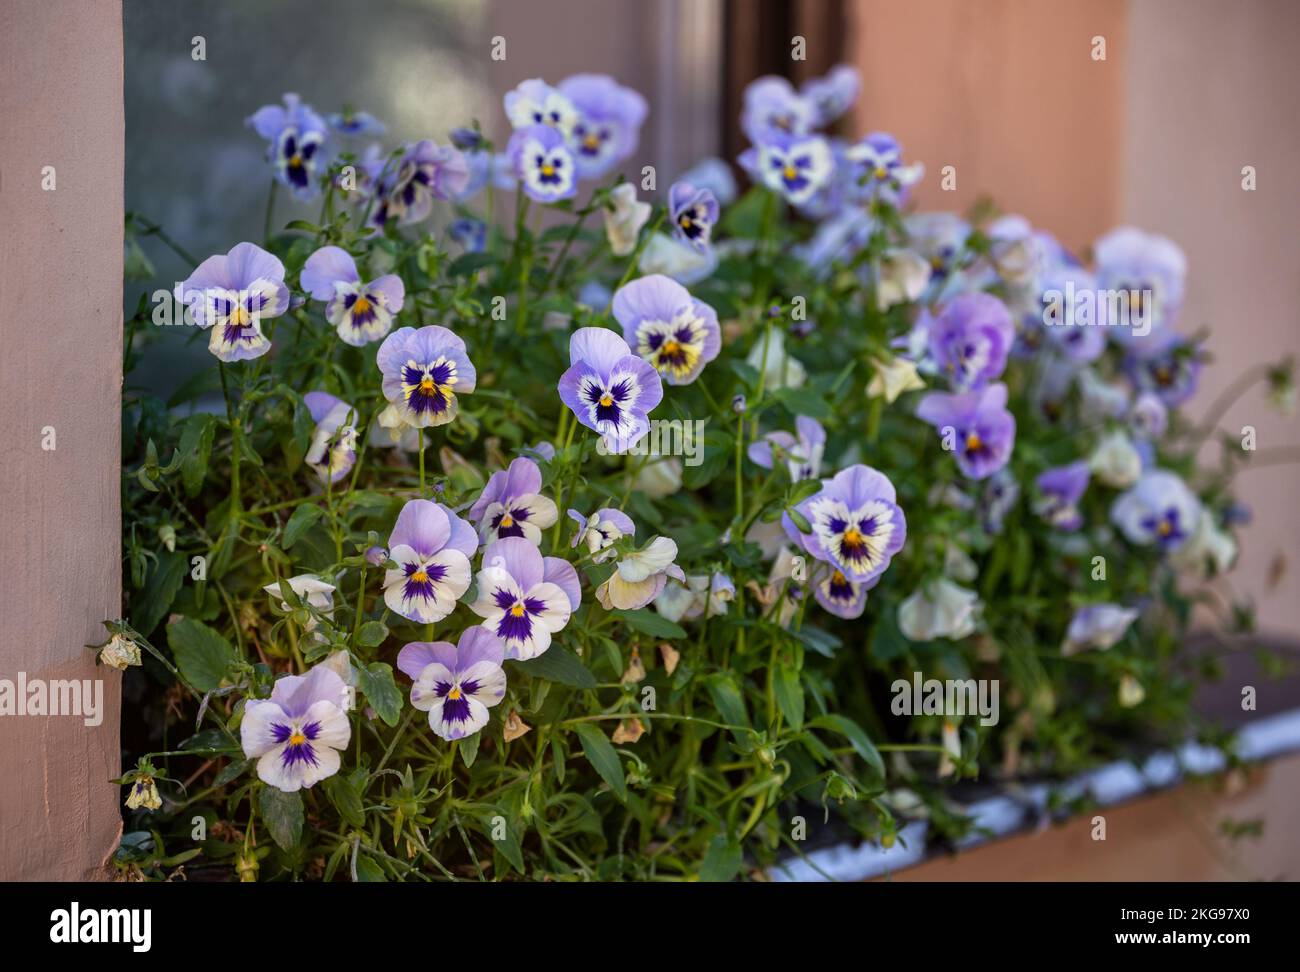 Blumenkiste mit fliederfarbenen Schwänzen. Garten auf der Fensterbank Stockfoto